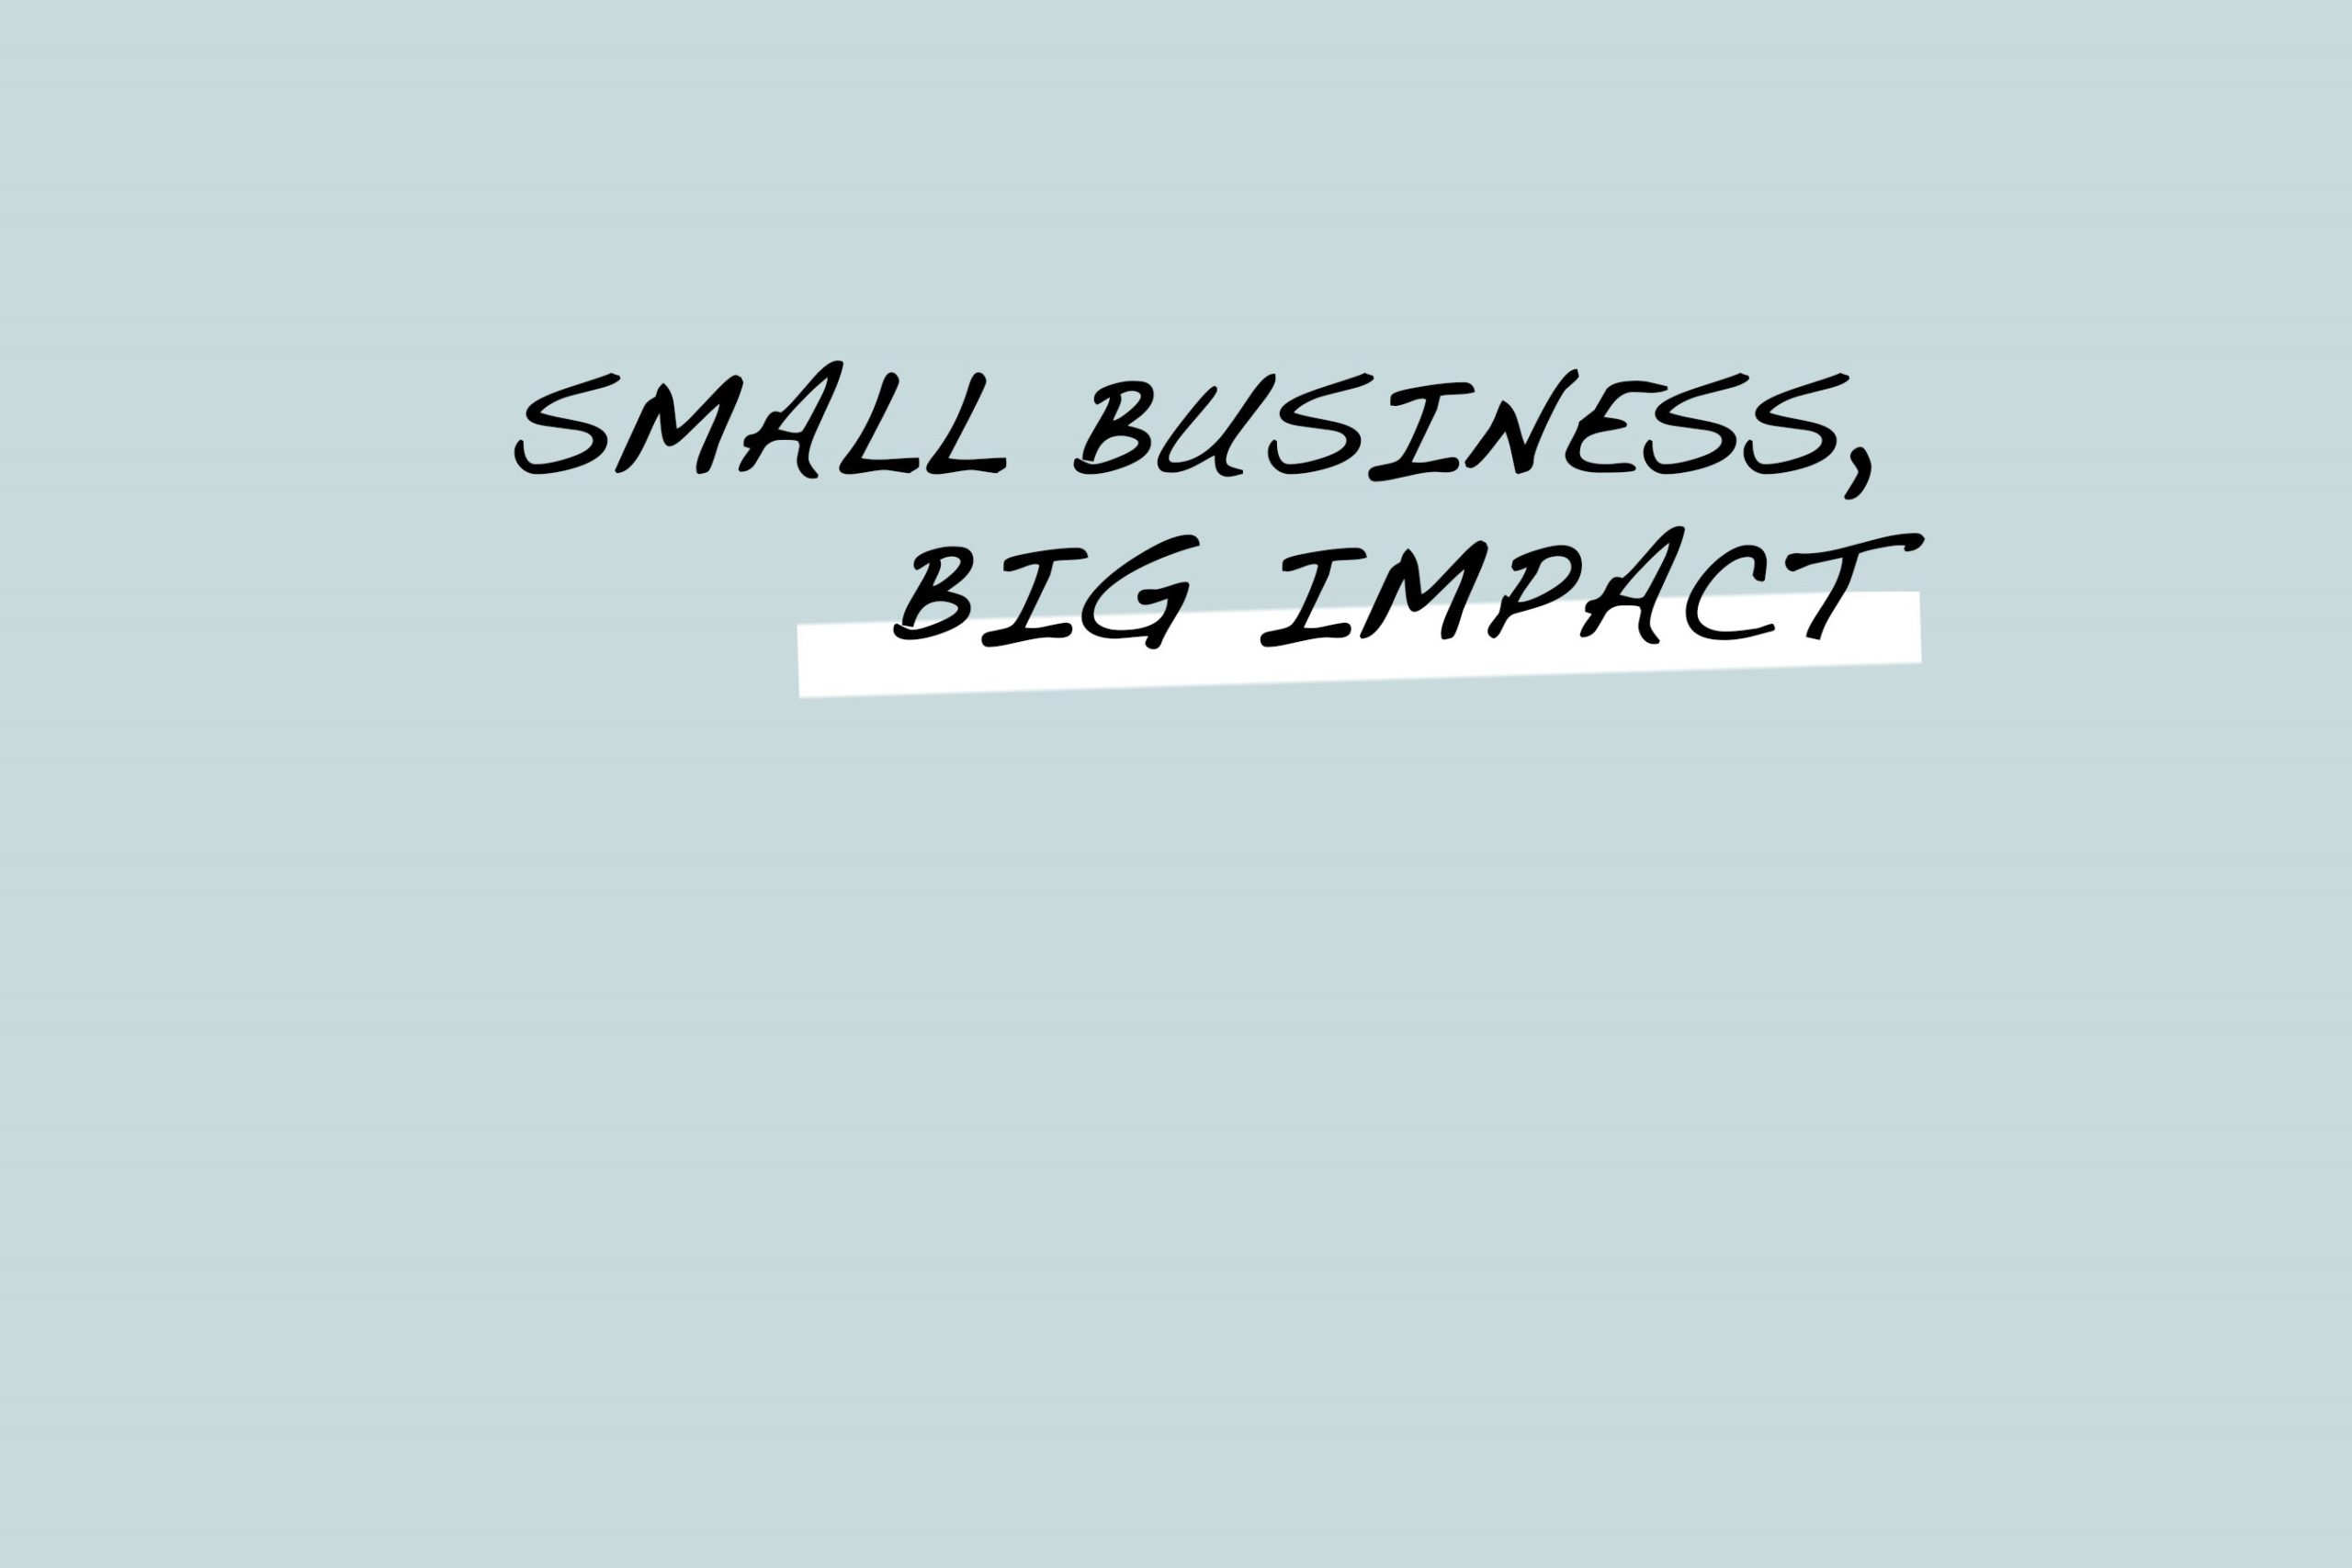 Auf hellblauem Untergrund steht der Text "Small Business, Big Impact